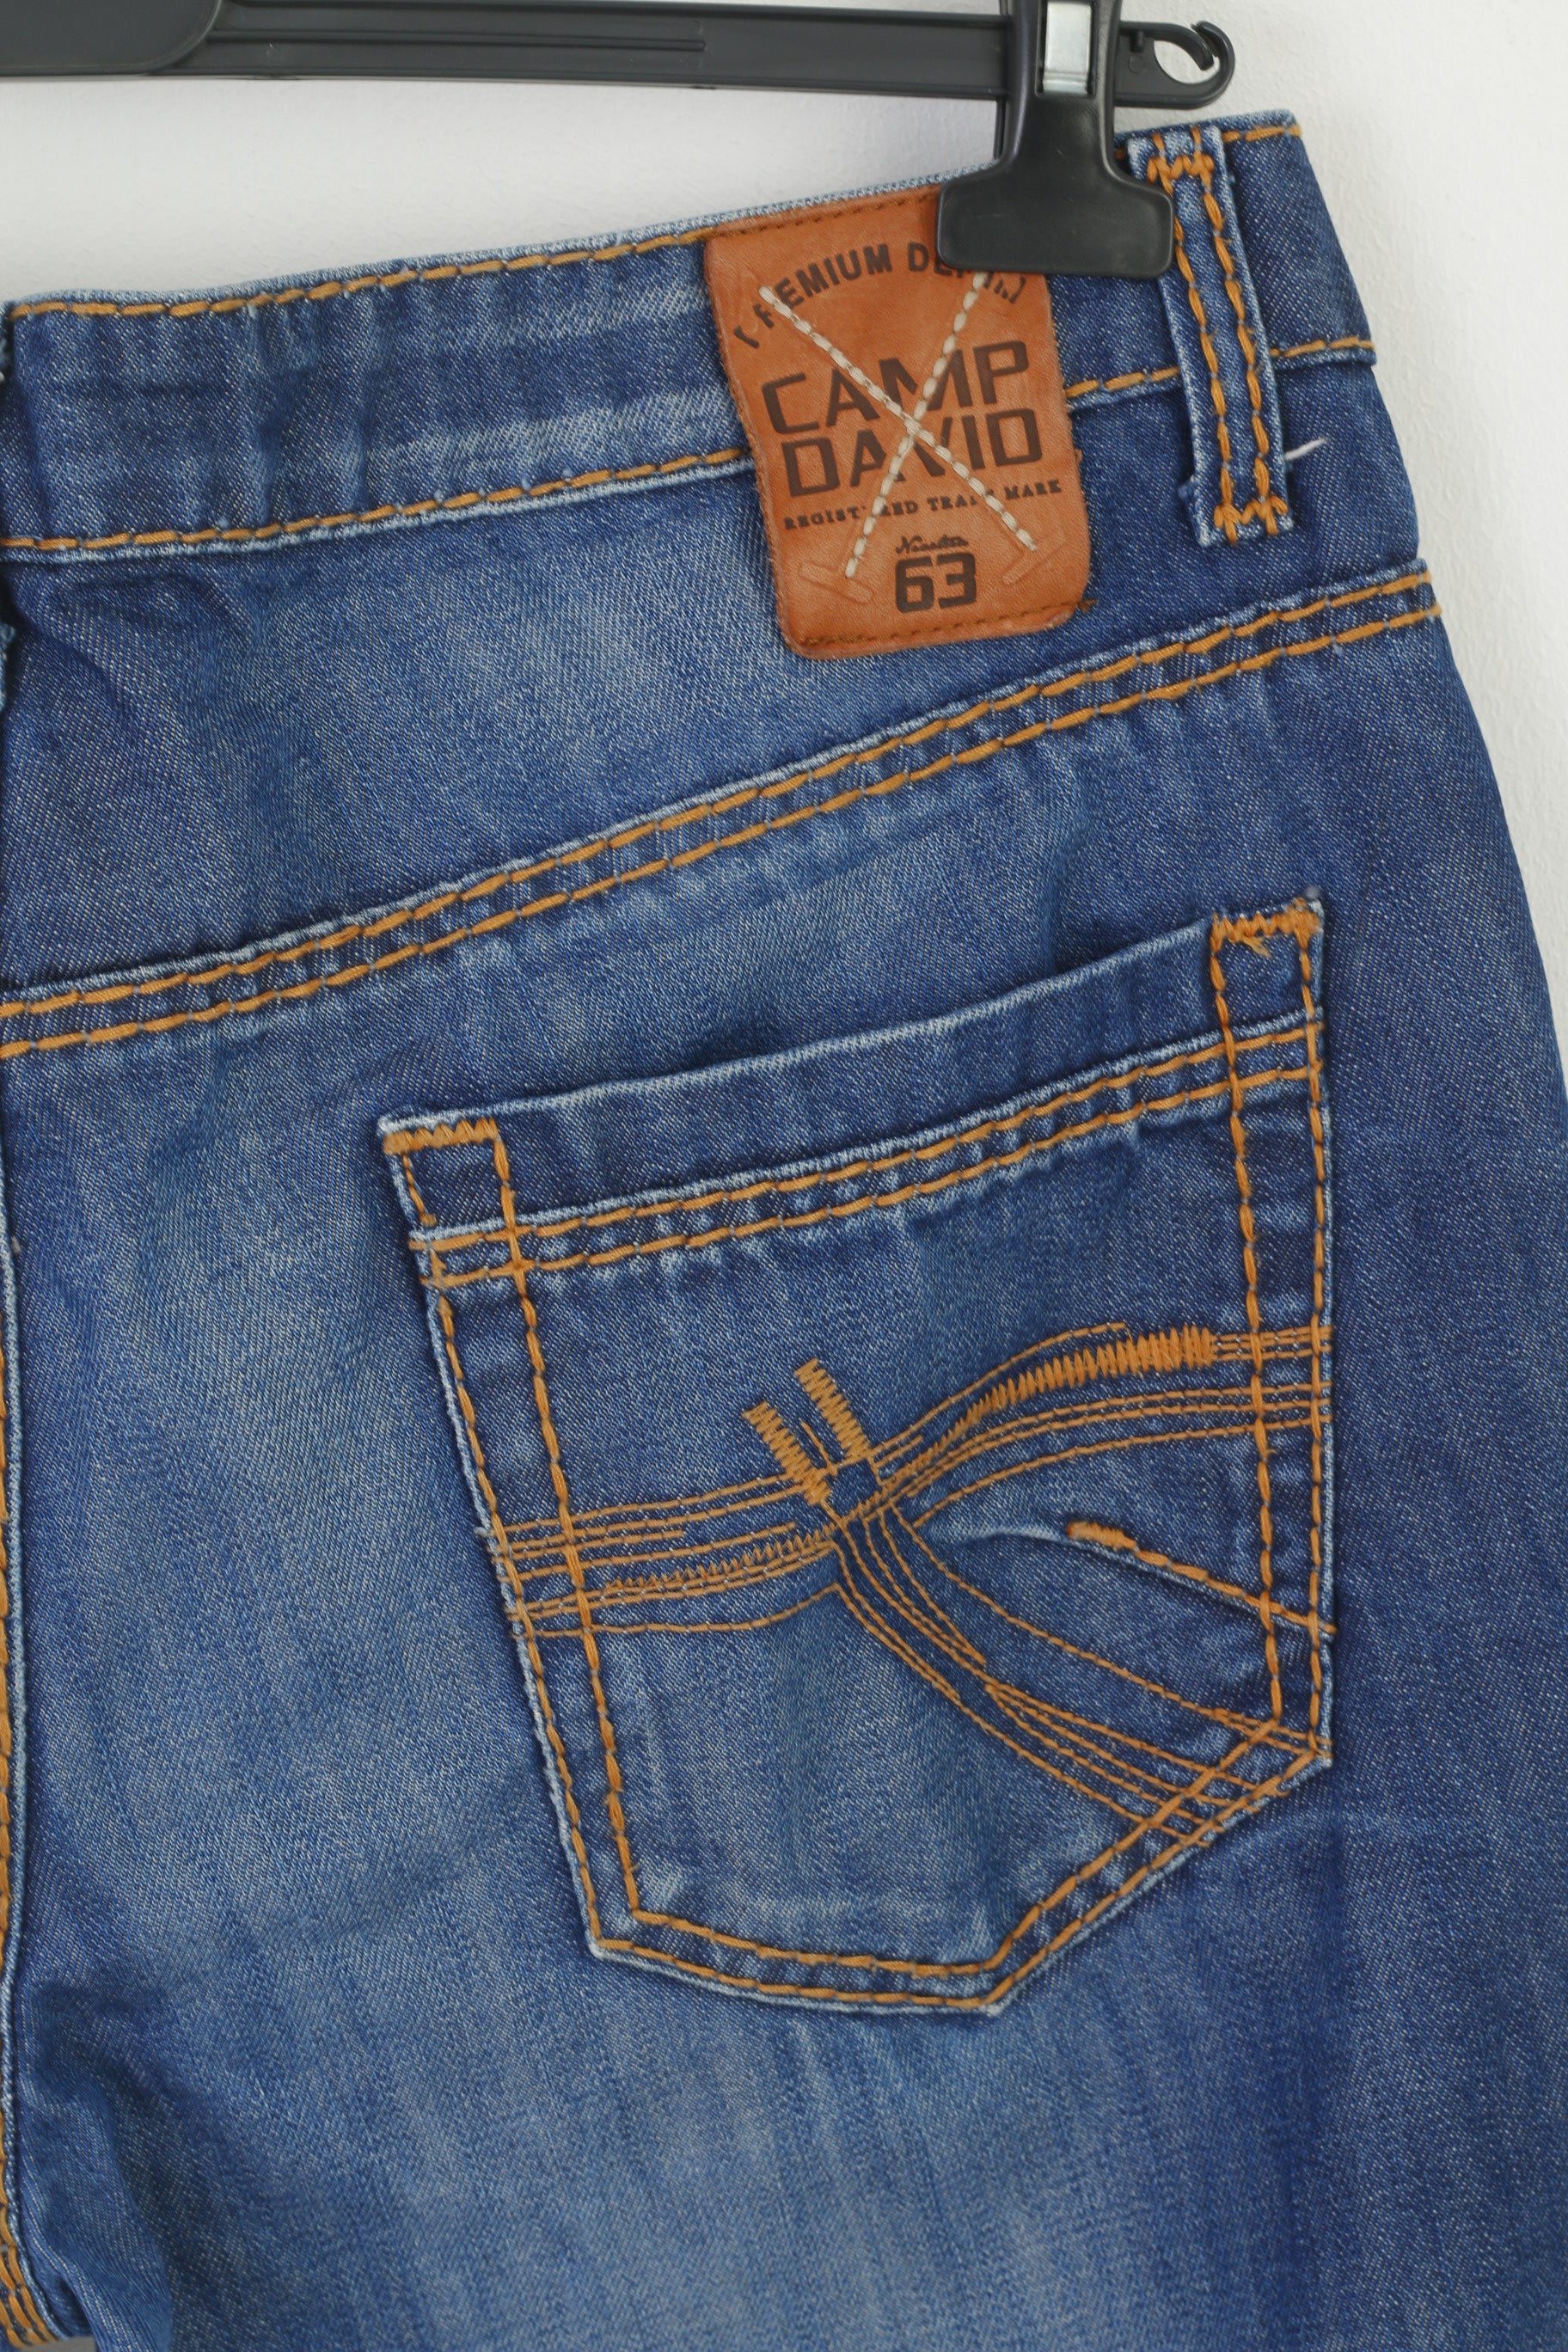 – Men Clothes Denim Navy Camp David 36 Straight Retrospect Long Jeans Cotton Leg P Trousers